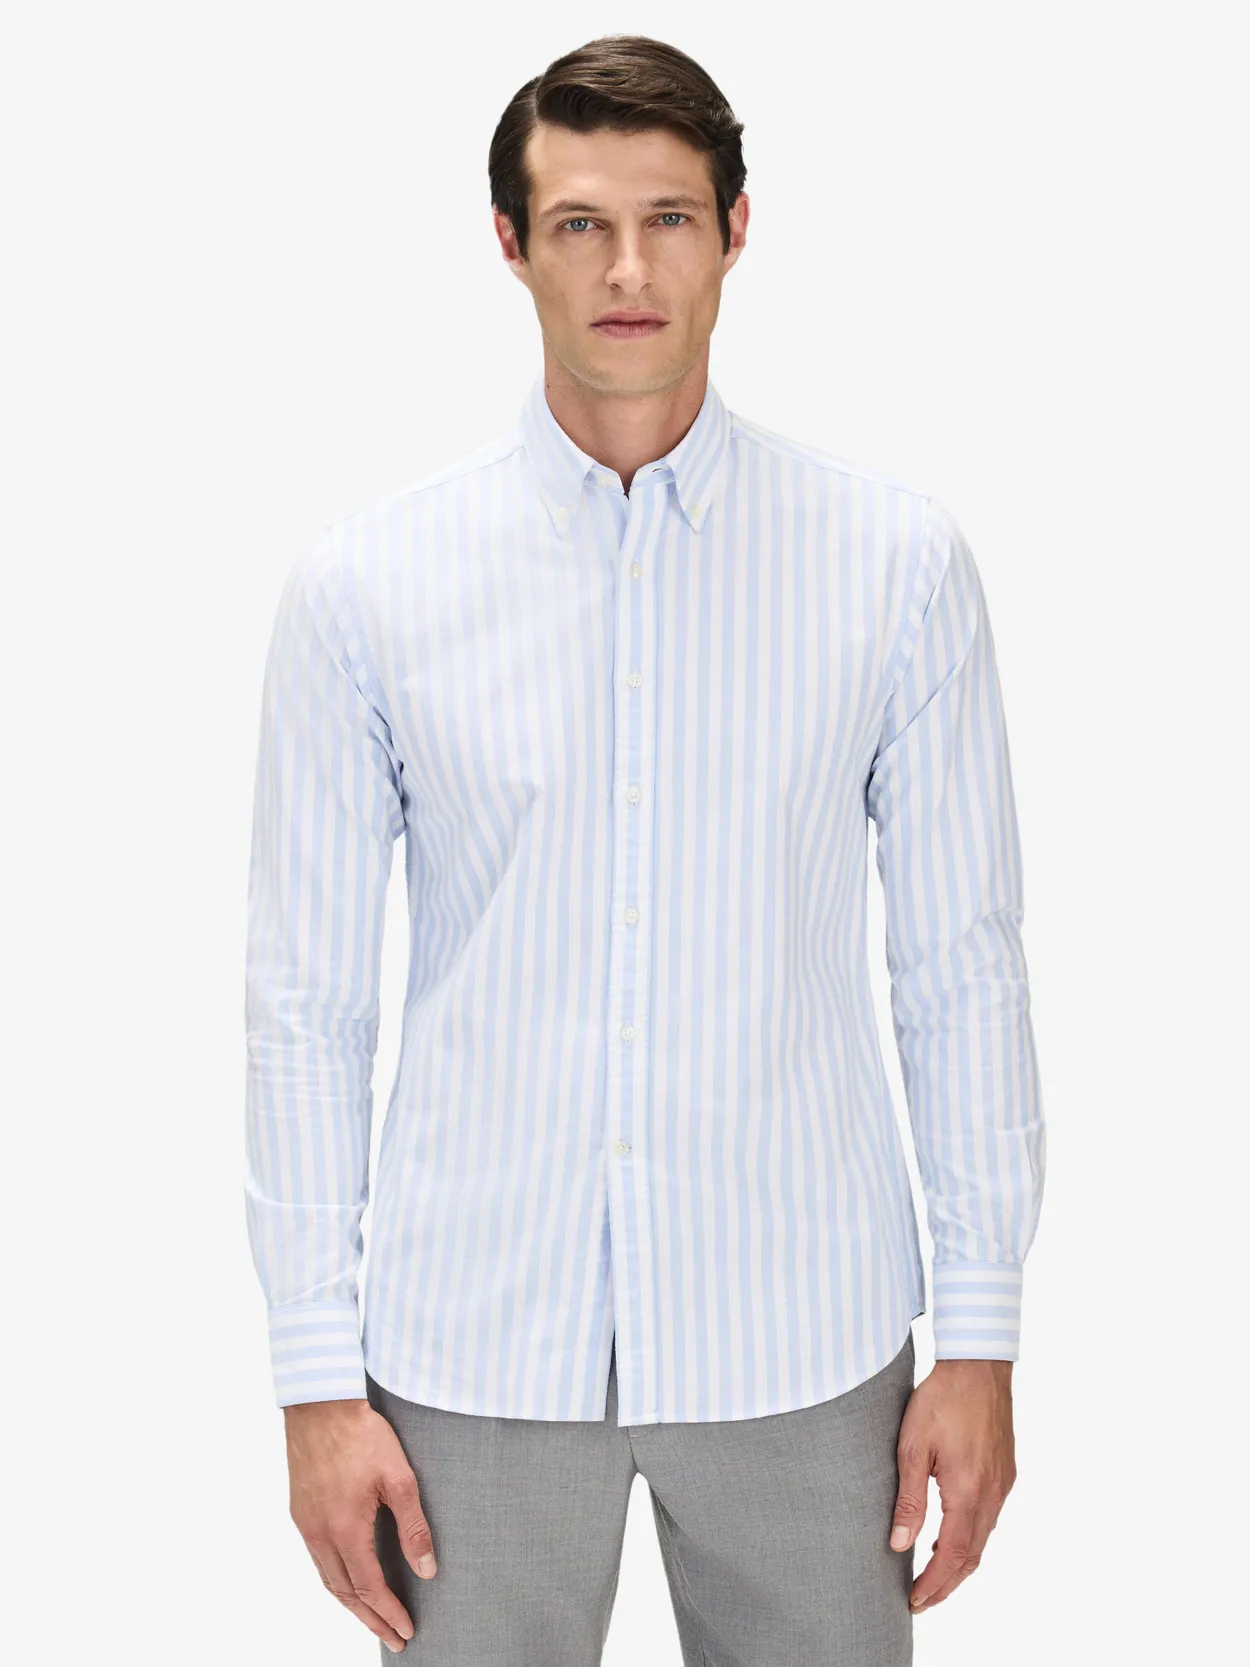 Blå & Hvid Stribet Oxford Skjorte